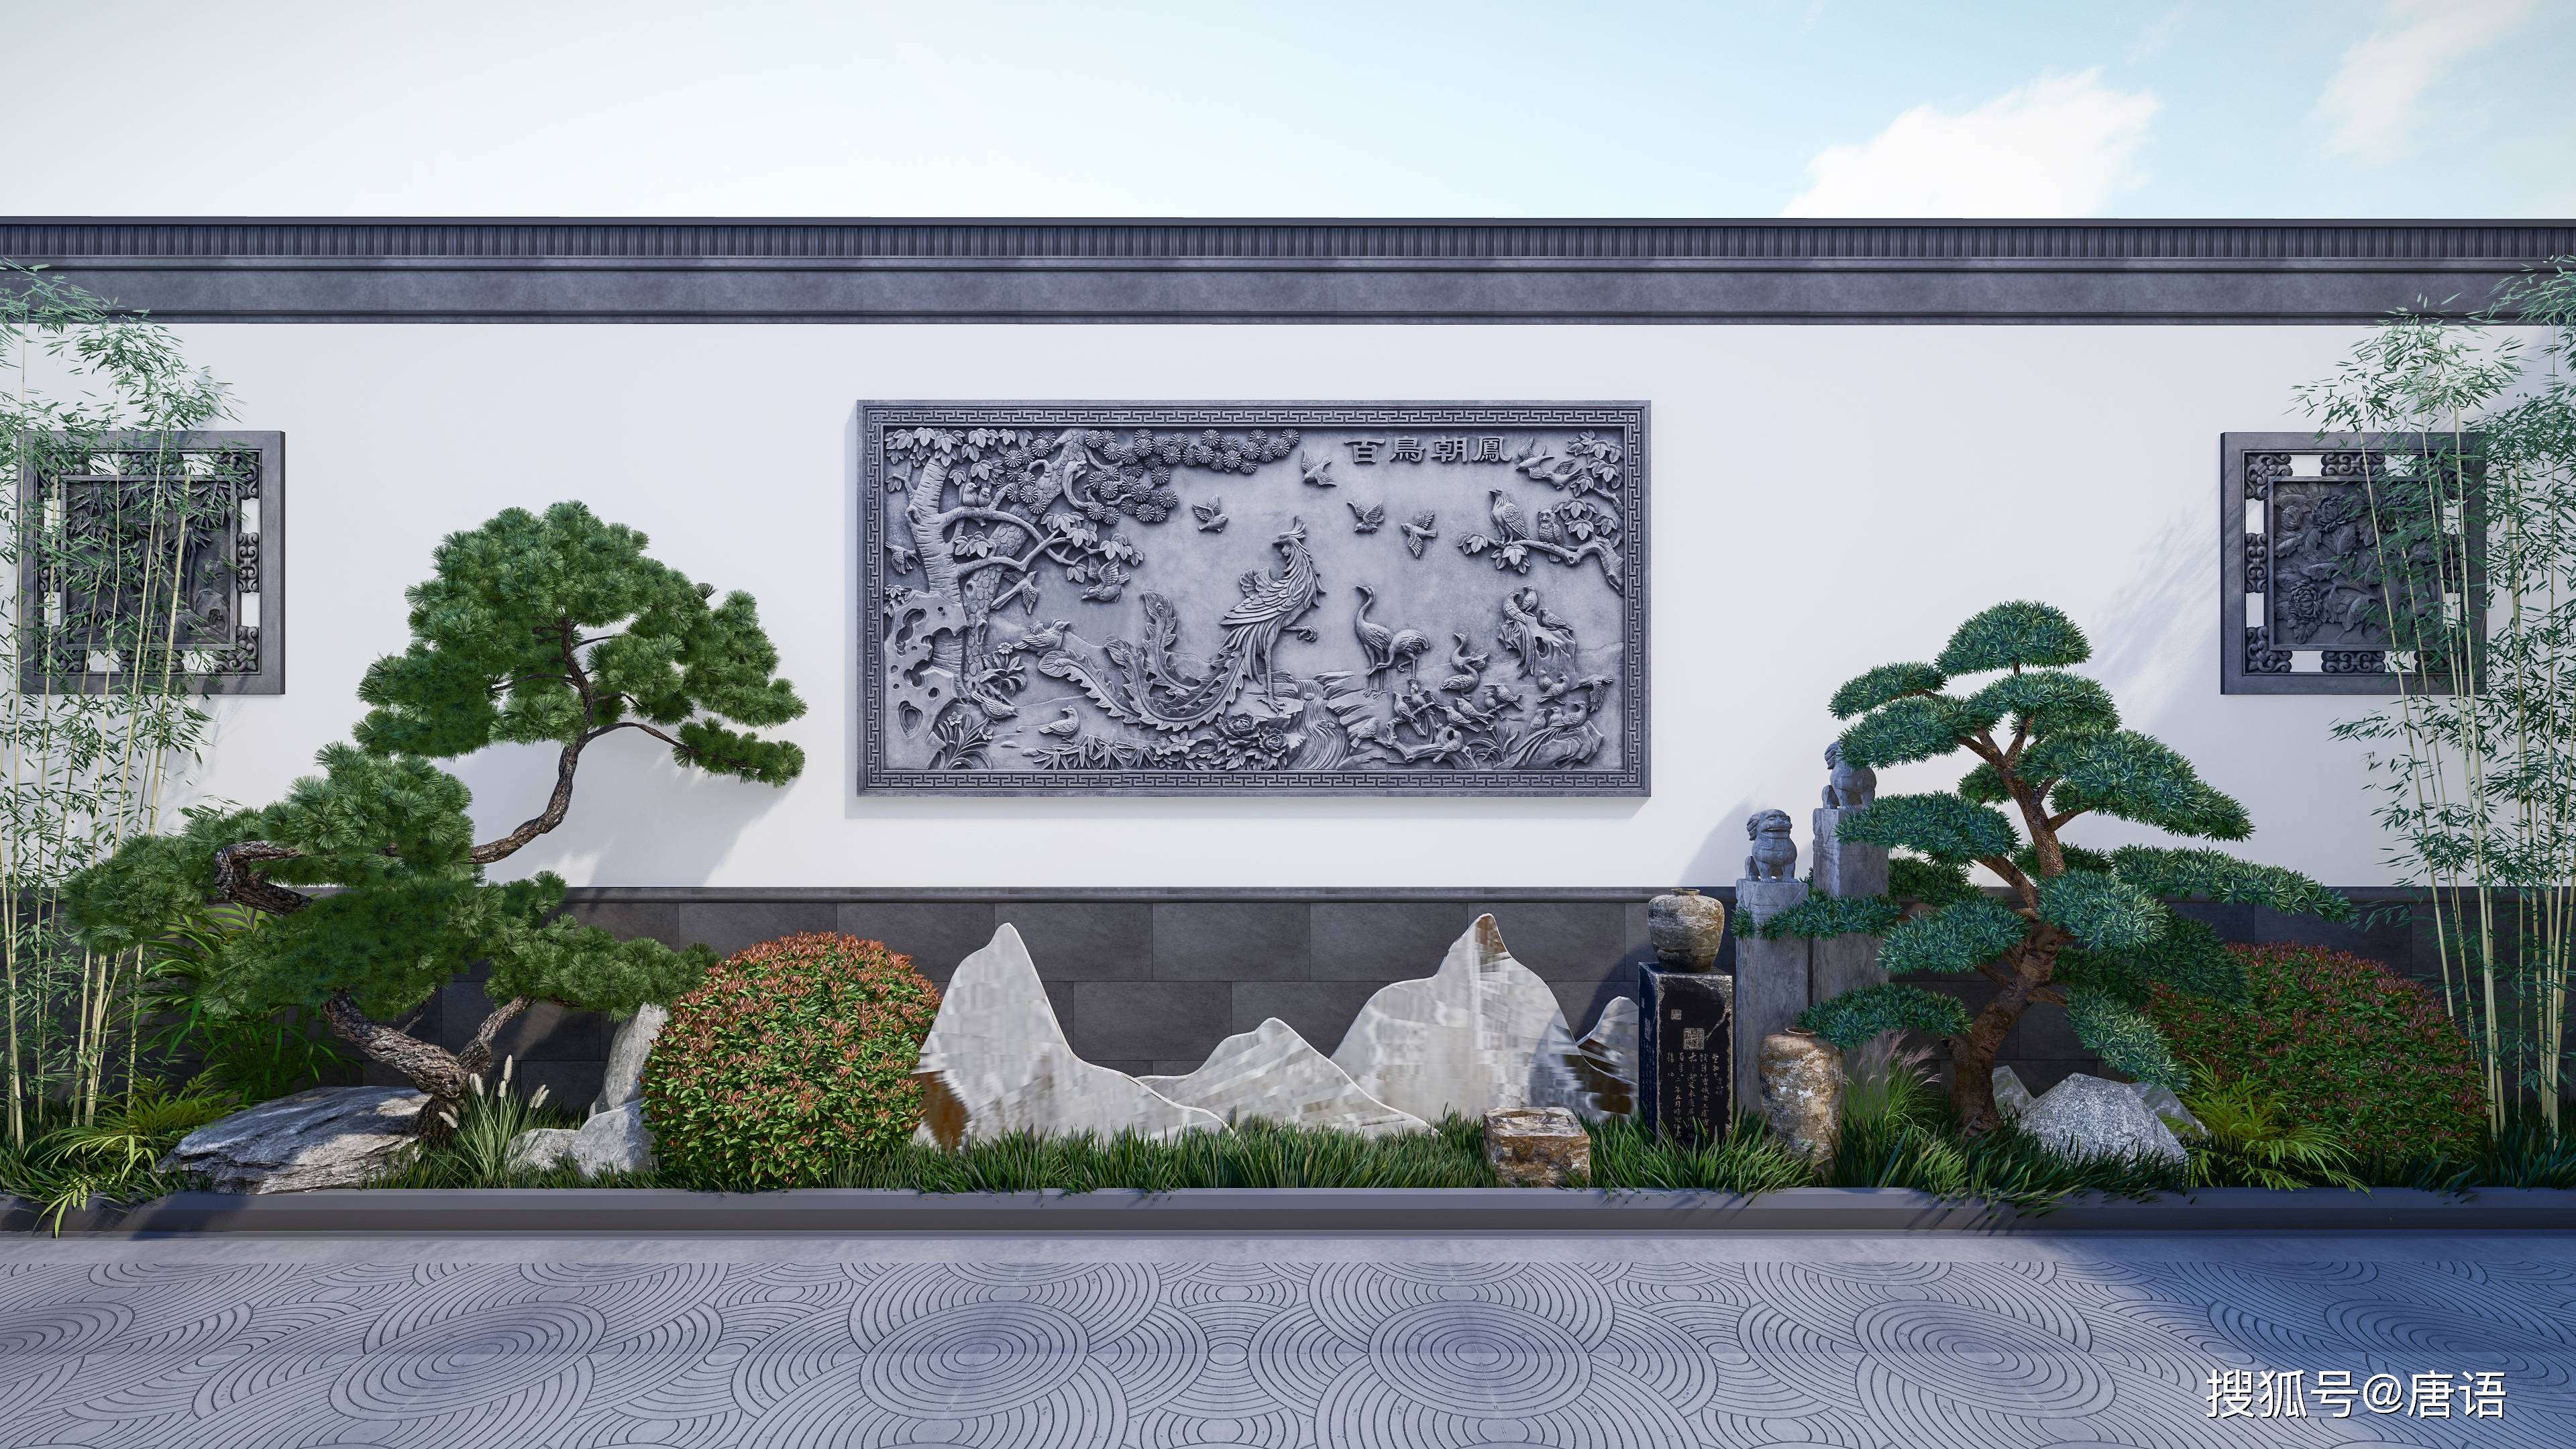 八字影壁墙图片大全唐语景观中式苏式徽派建筑砖雕材料生产厂家